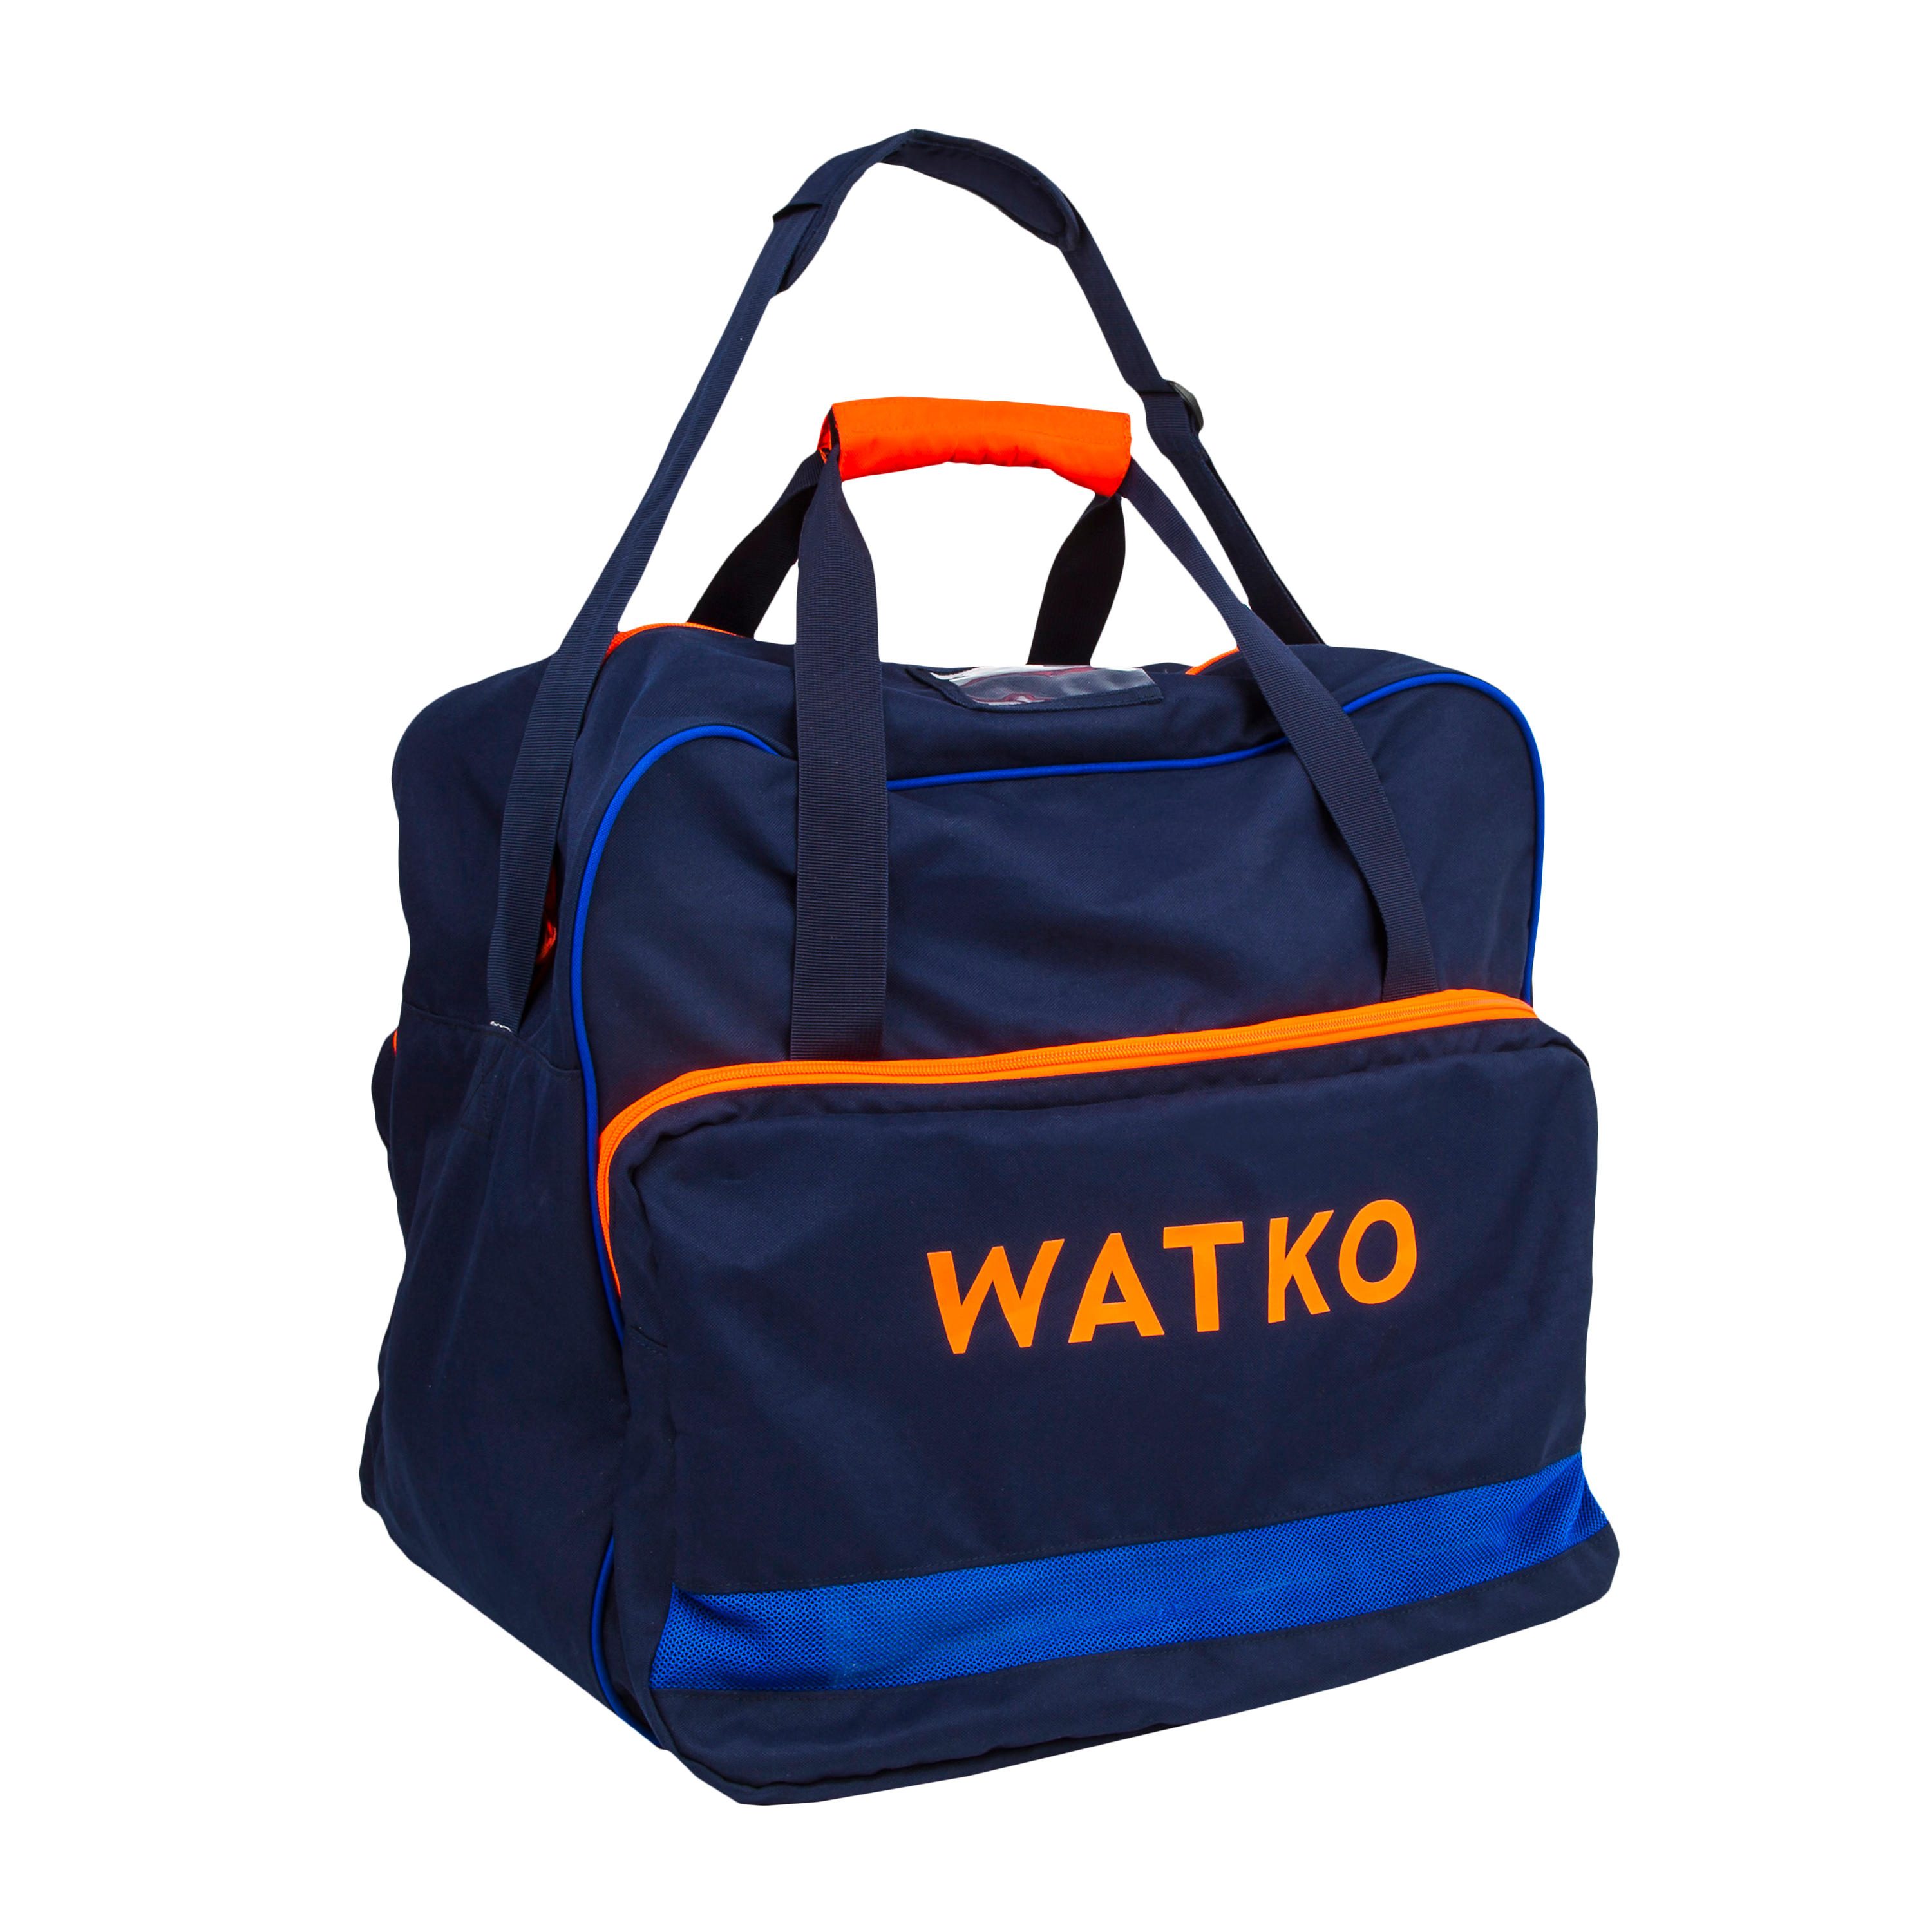 Спортивная сумка для водного поло 60 л синяя/неоново-оранжевая WATKO, индиго / неоново-красный / темно-синий детские плавательные очки противотуманные плавательные очки hd для мальчиков и девочек набор плавательных кепок водонепроницаемые и прот